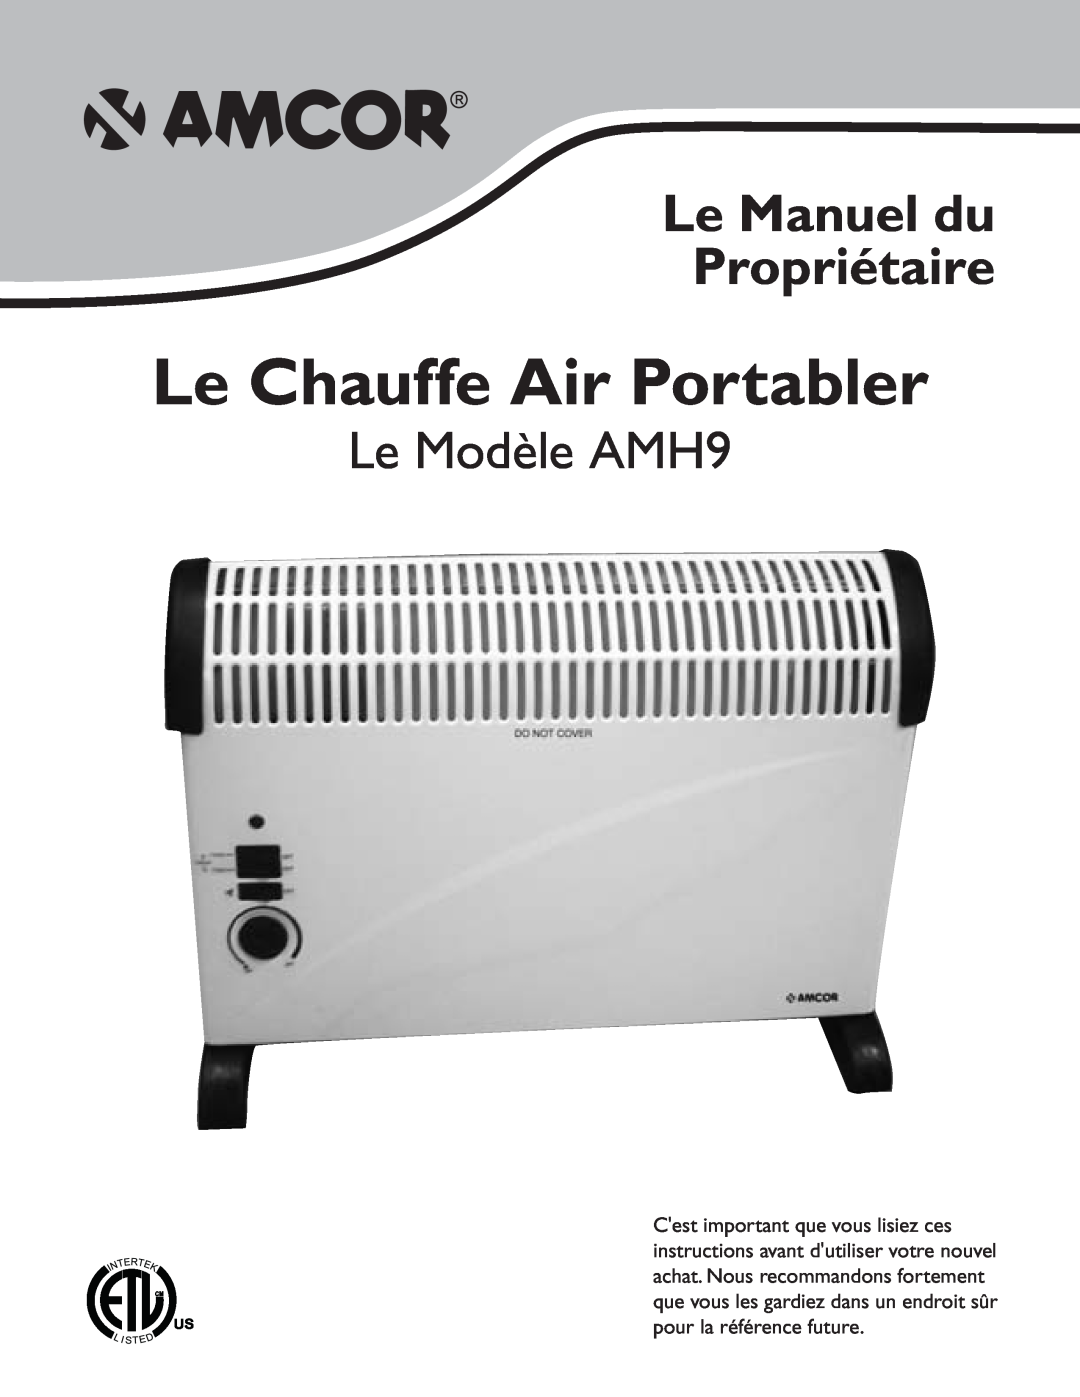 Amcor owner manual Le Chauffe Air Portabler, Le Manuel du Propriétaire, Le Modèle AMH9 